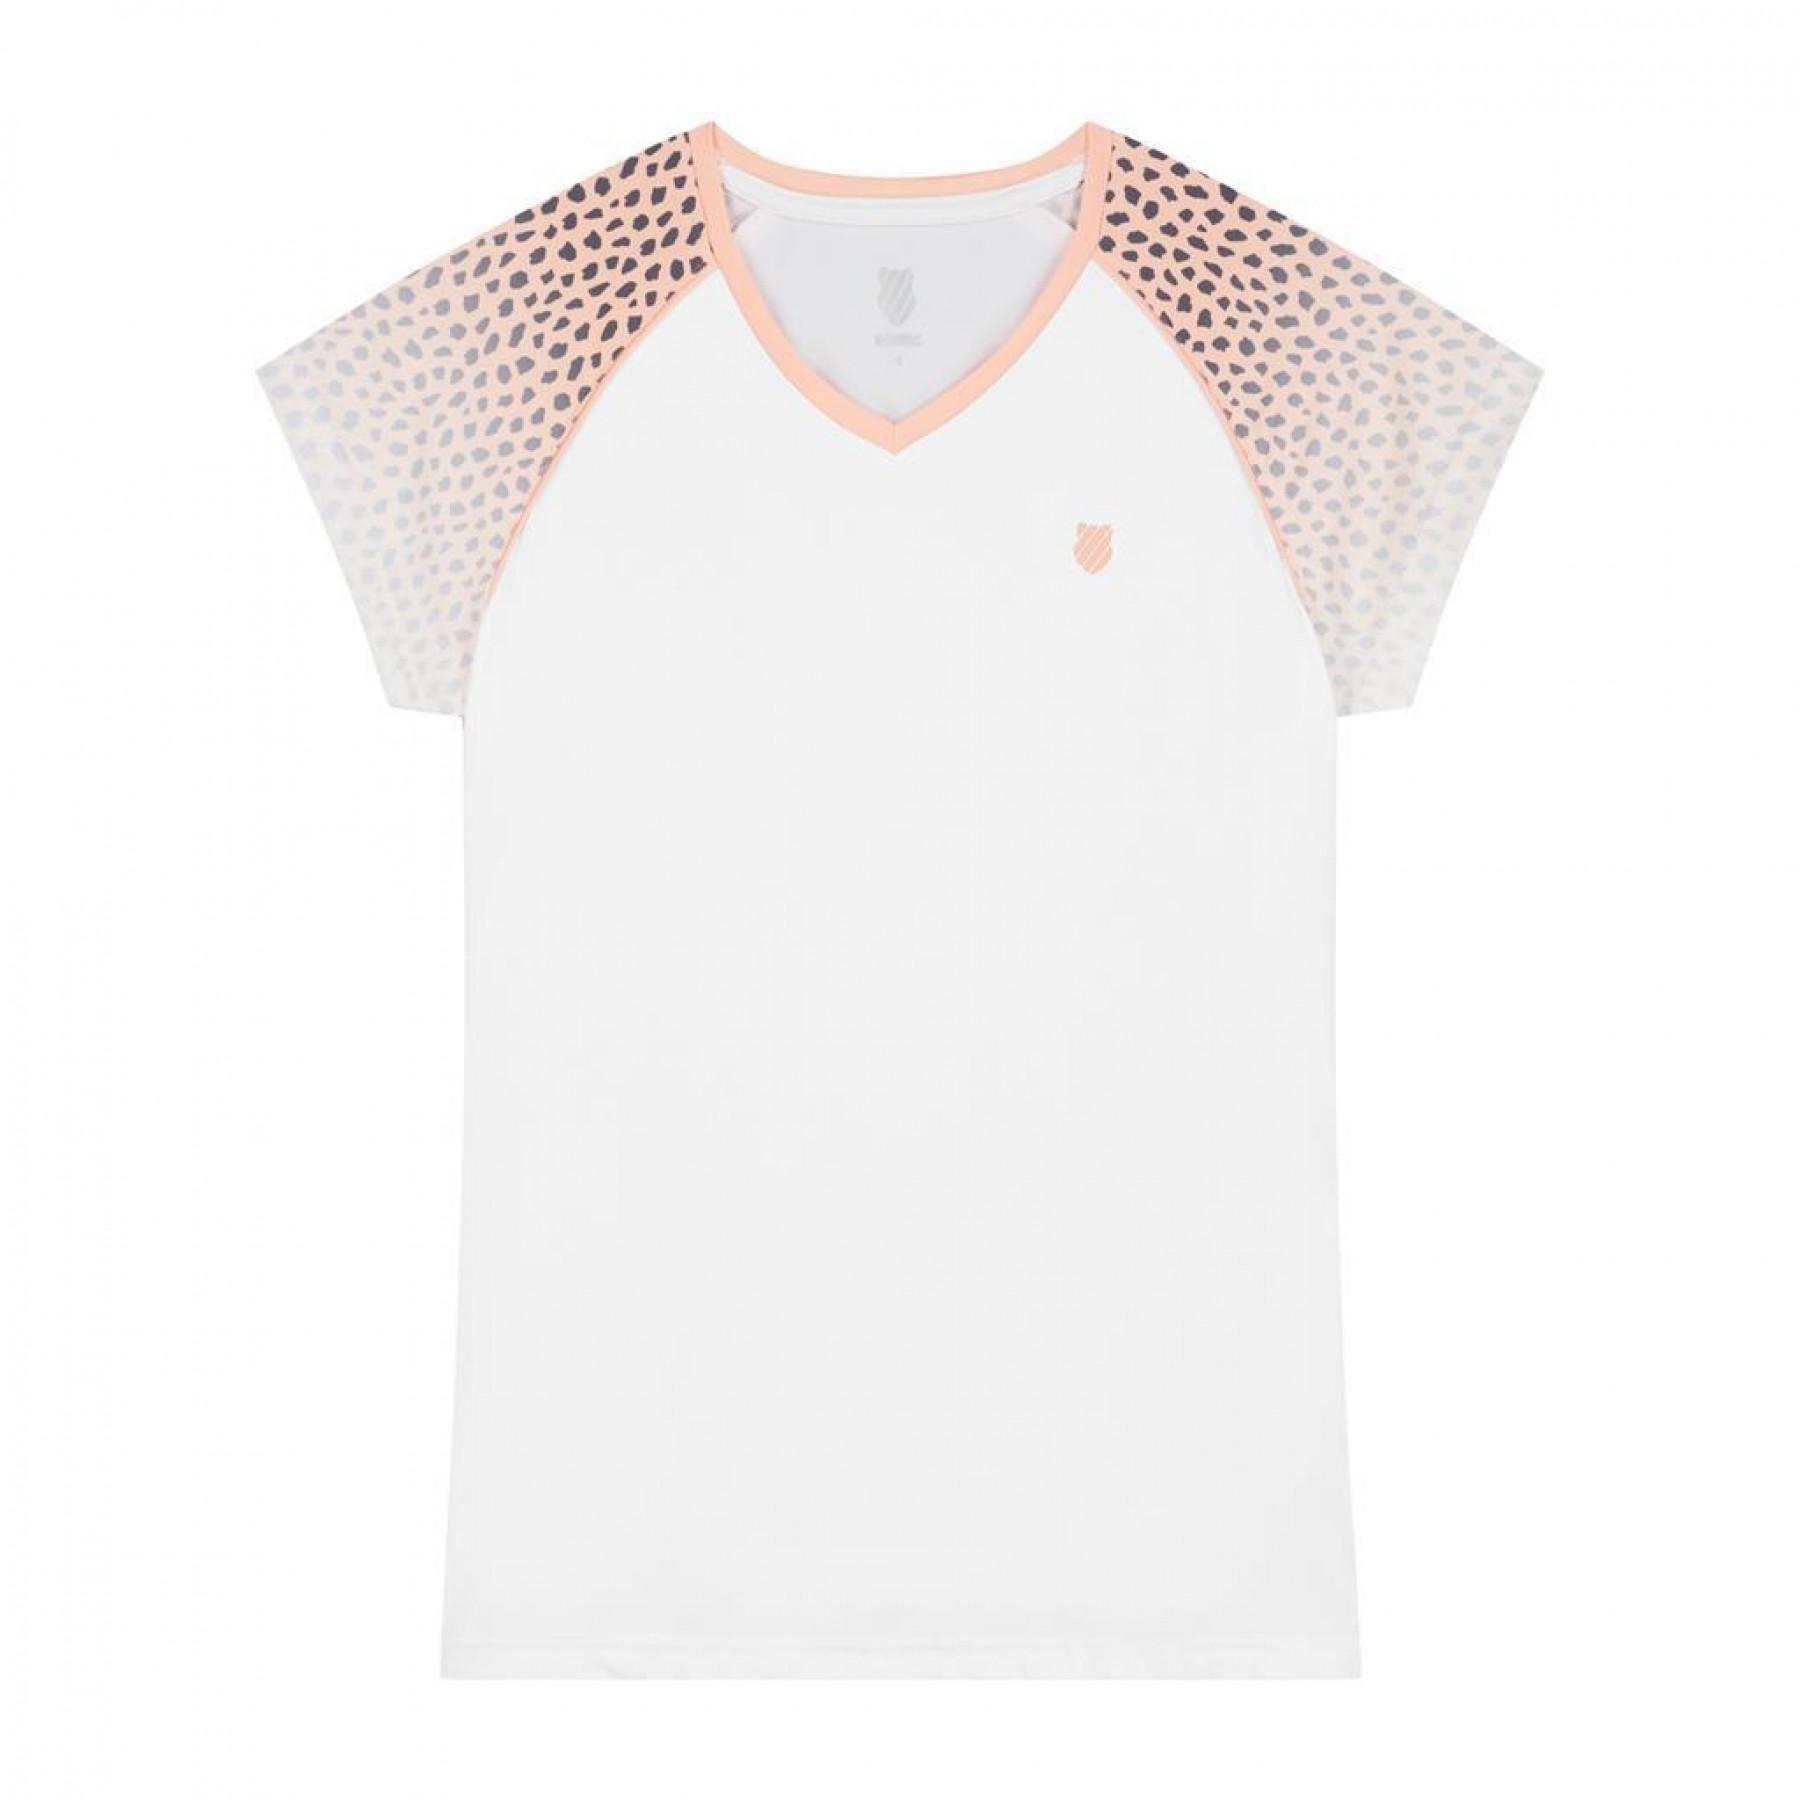 Camiseta mujer K-Swiss hypercourt top